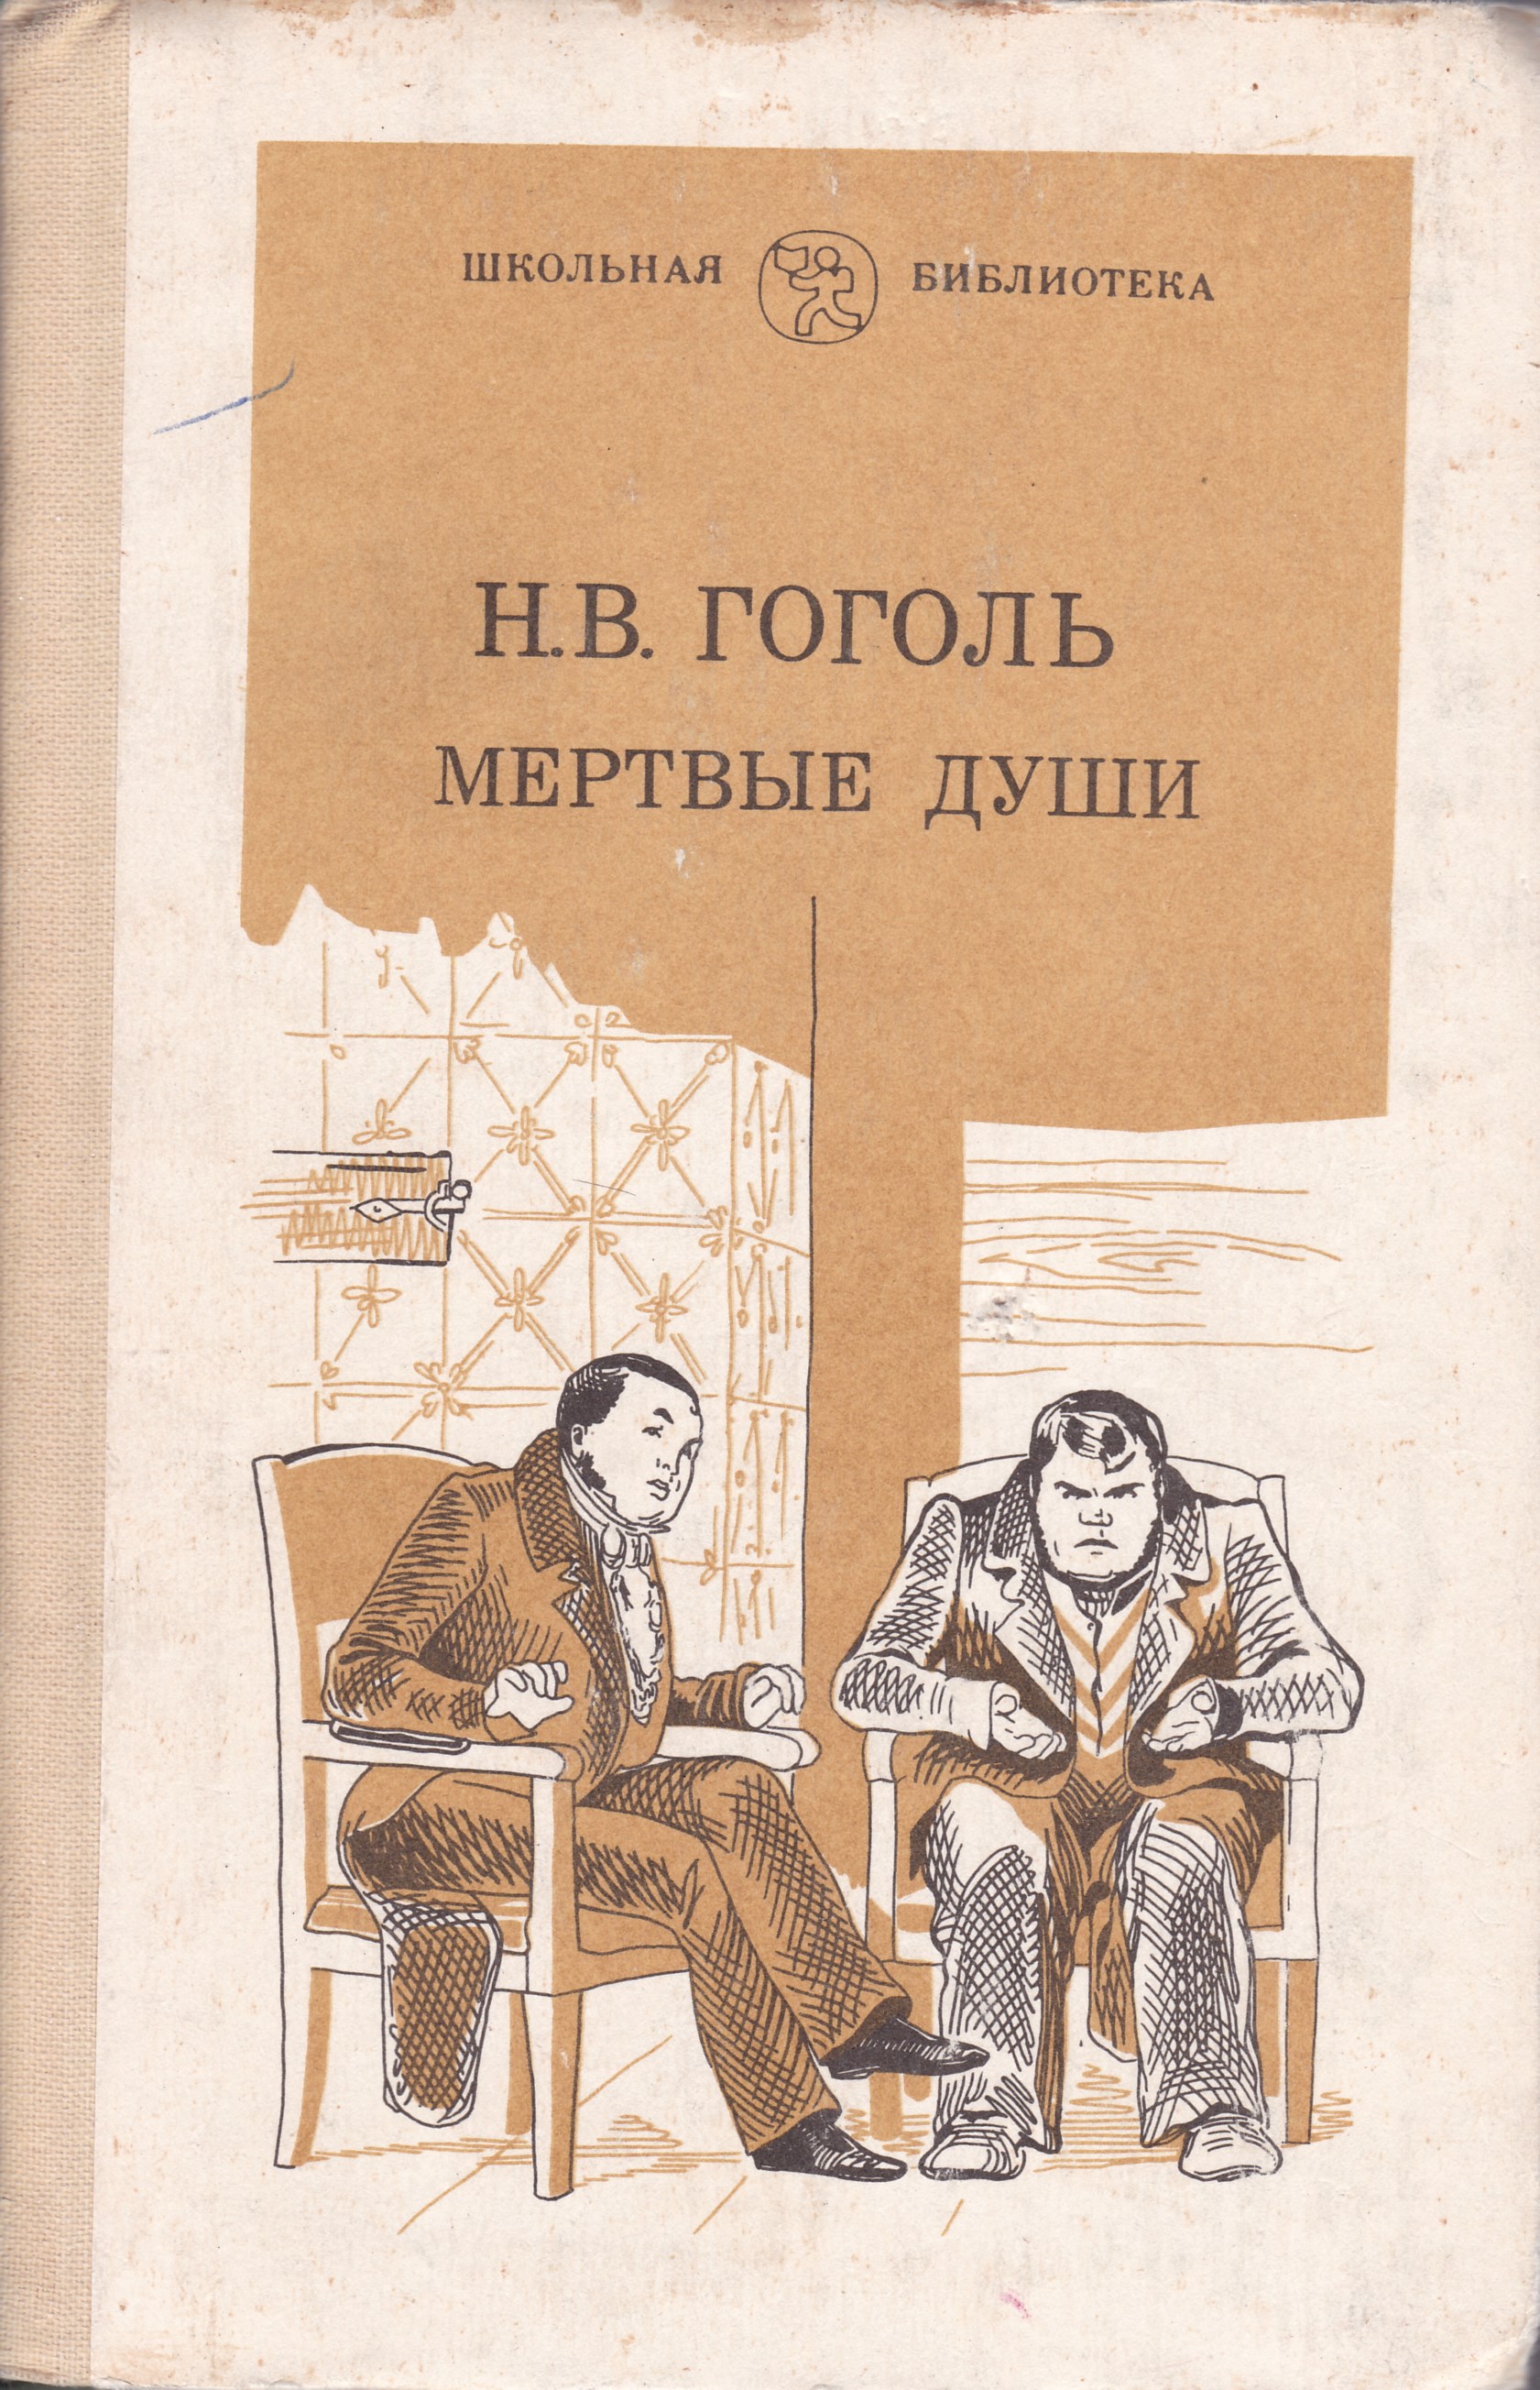 Читать произведения гоголя мертвые души. Гоголь мертвые души Школьная библиотека. Гоголь н. в. "мертвые души" 1839. Гоголь мертвые души книга.